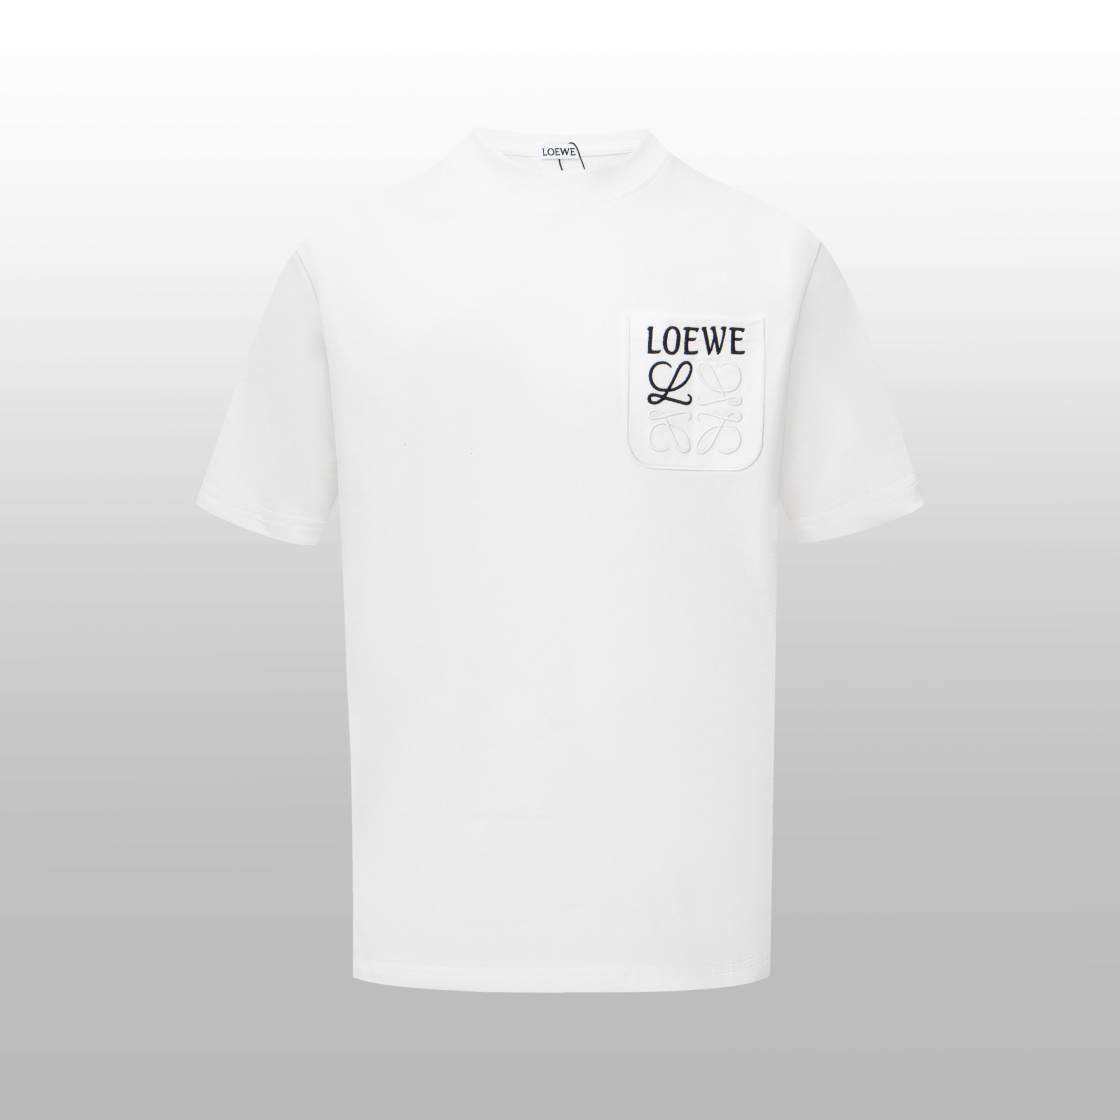 Loewe Clothing T-Shirt White Embroidery Unisex Short Sleeve